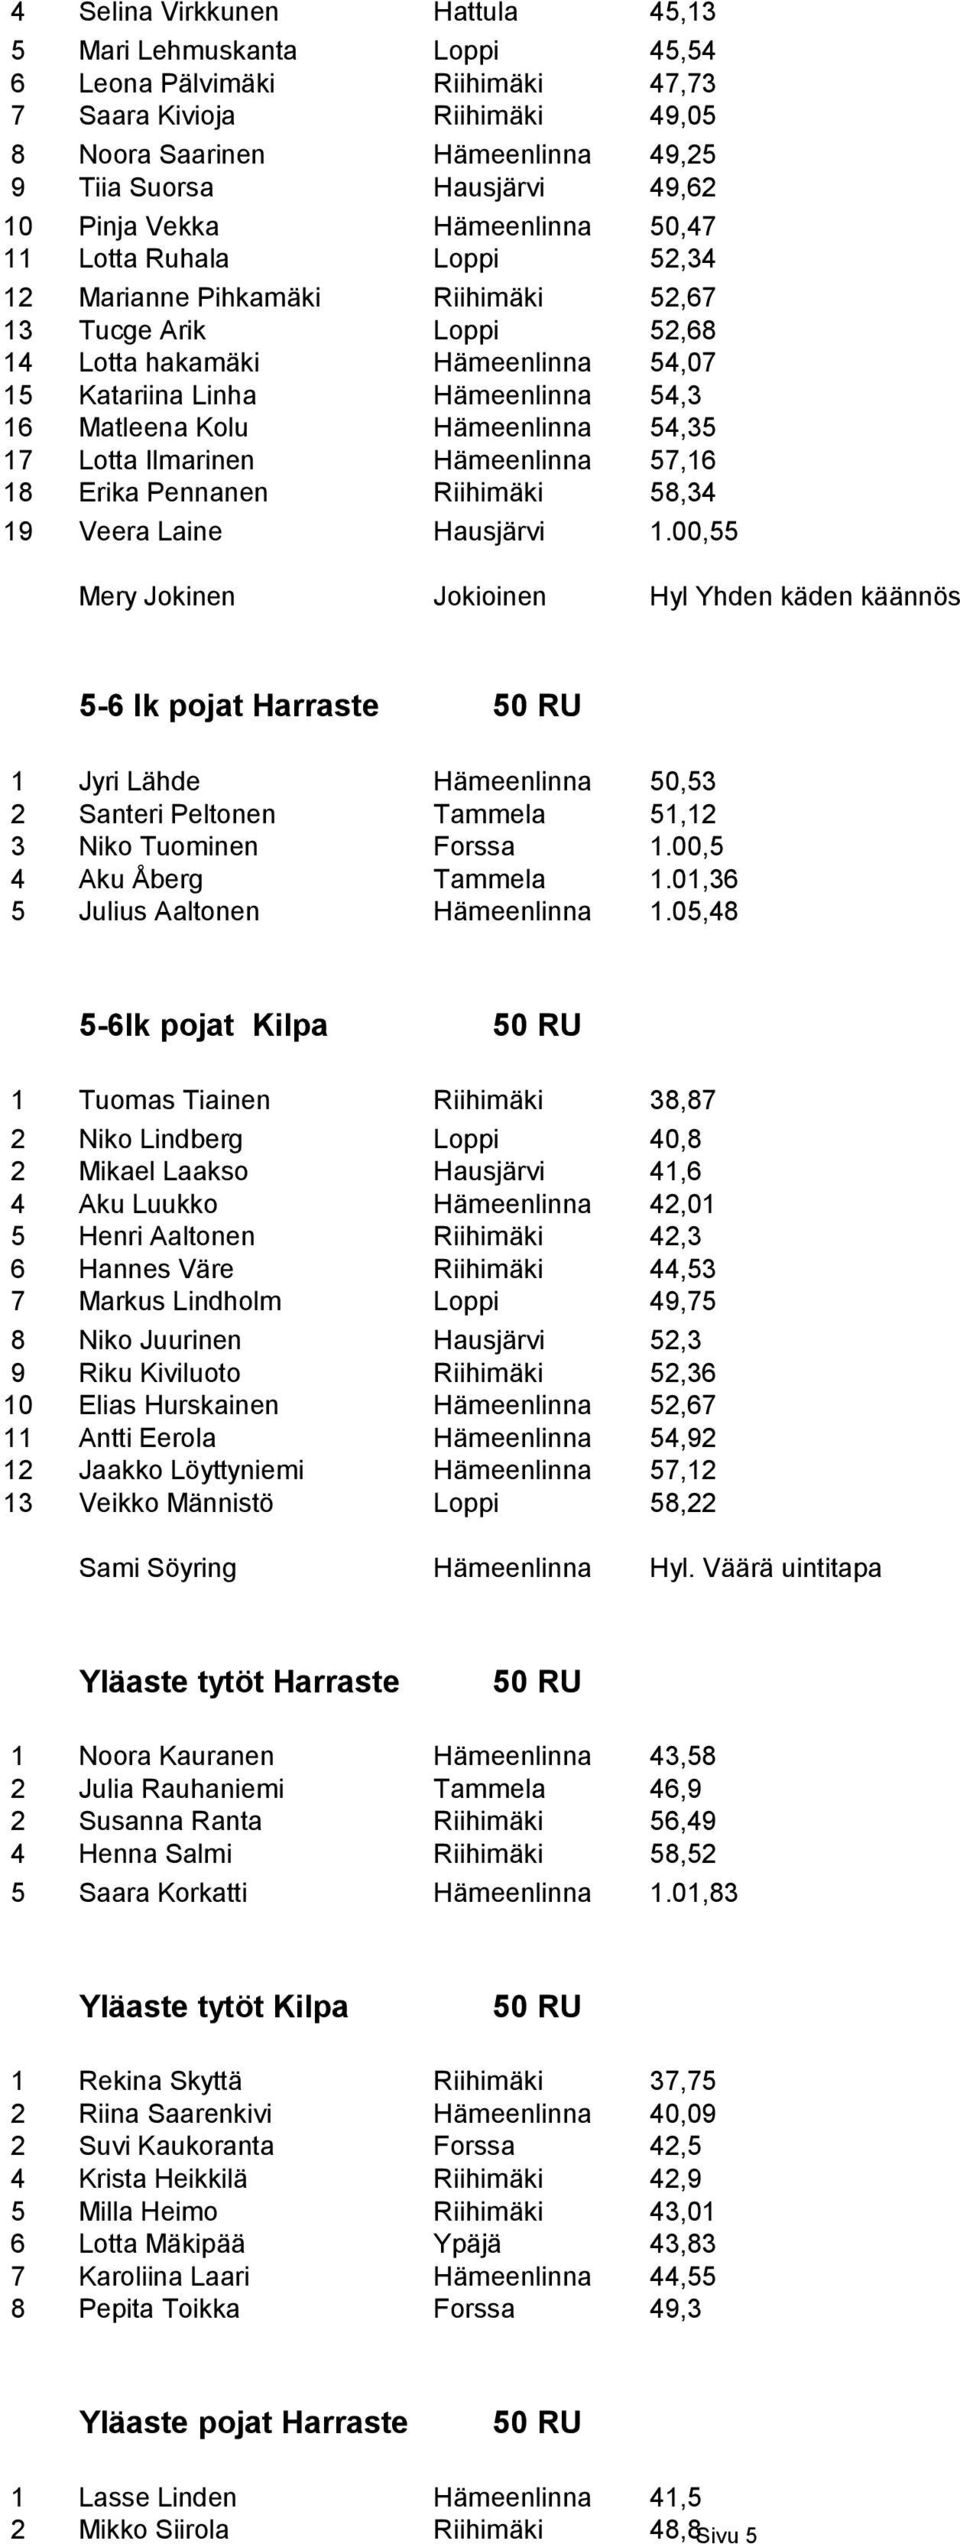 Matleena Kolu Hämeenlinna 54,35 17 Lotta Ilmarinen Hämeenlinna 57,16 18 Erika Pennanen Riihimäki 58,34 19 Veera Laine Hausjärvi 1.